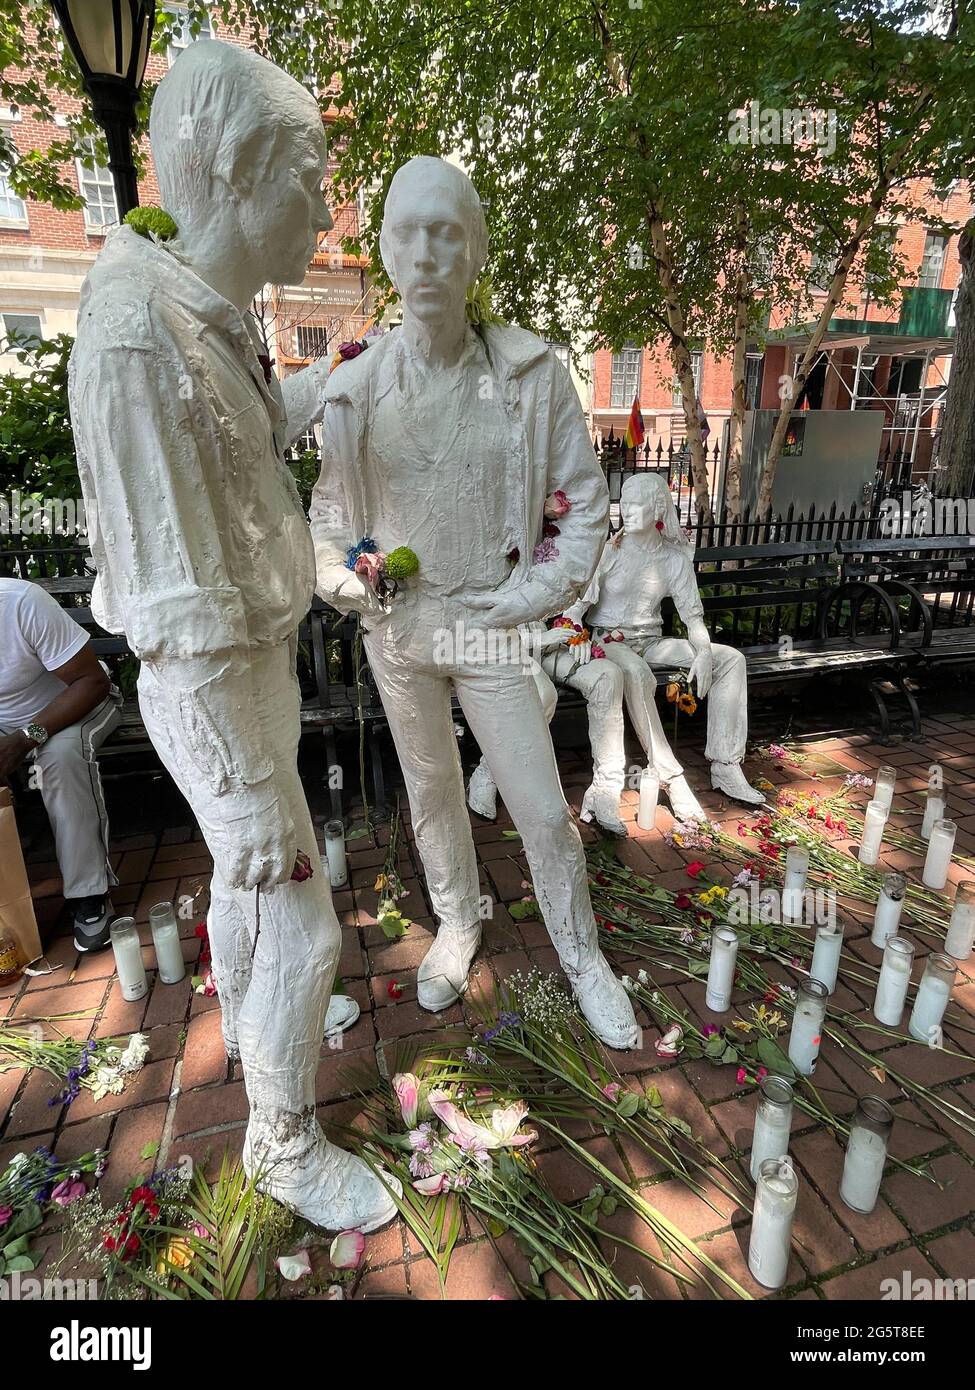 La estatua de la Liberación Gay de George Segal es parte del Monumento Nacional Stonewall en Christopher Park, frente al Stonewall Inn, Nueva York, NY Foto de stock